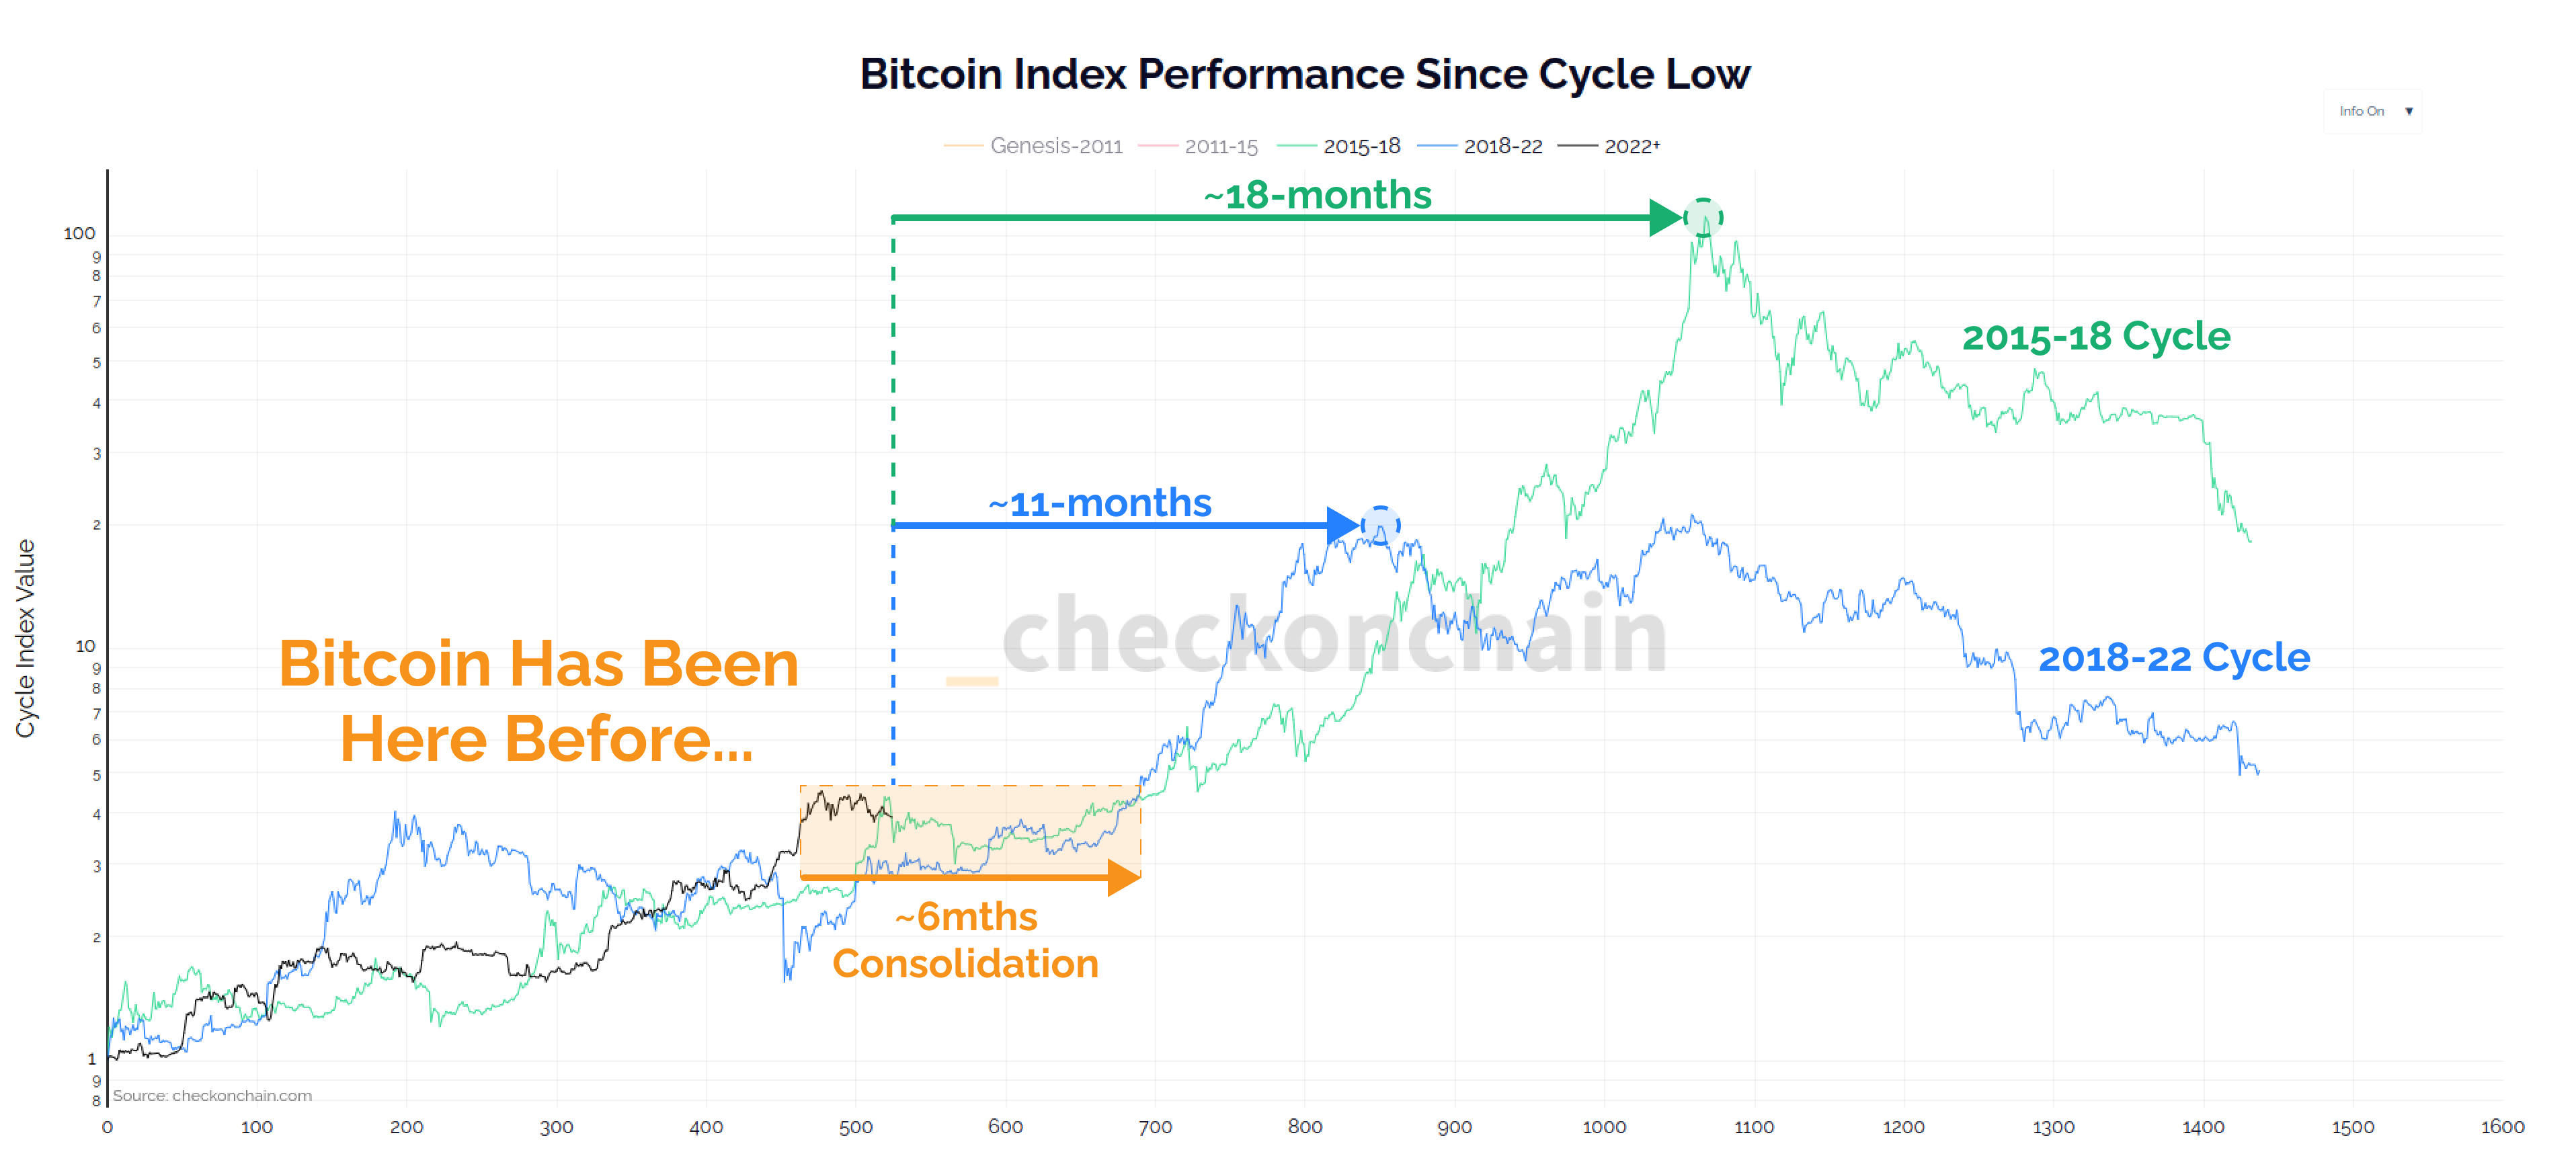 Bitcoin-Index-Performance seit Zyklustief